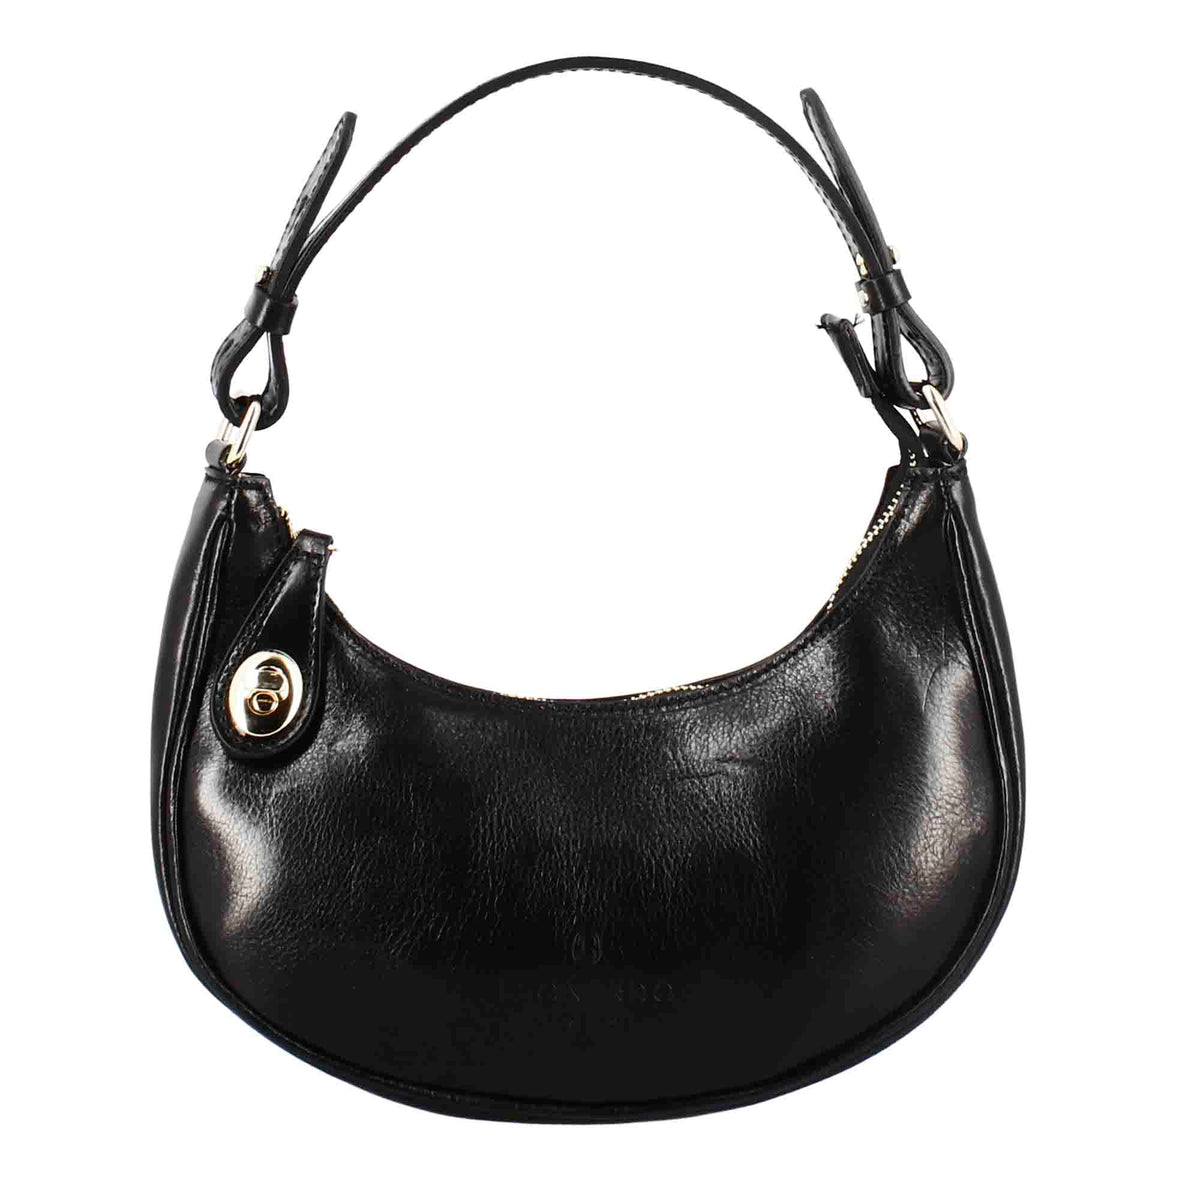 Jane shoulder bag in black leather with removable shoulder strap